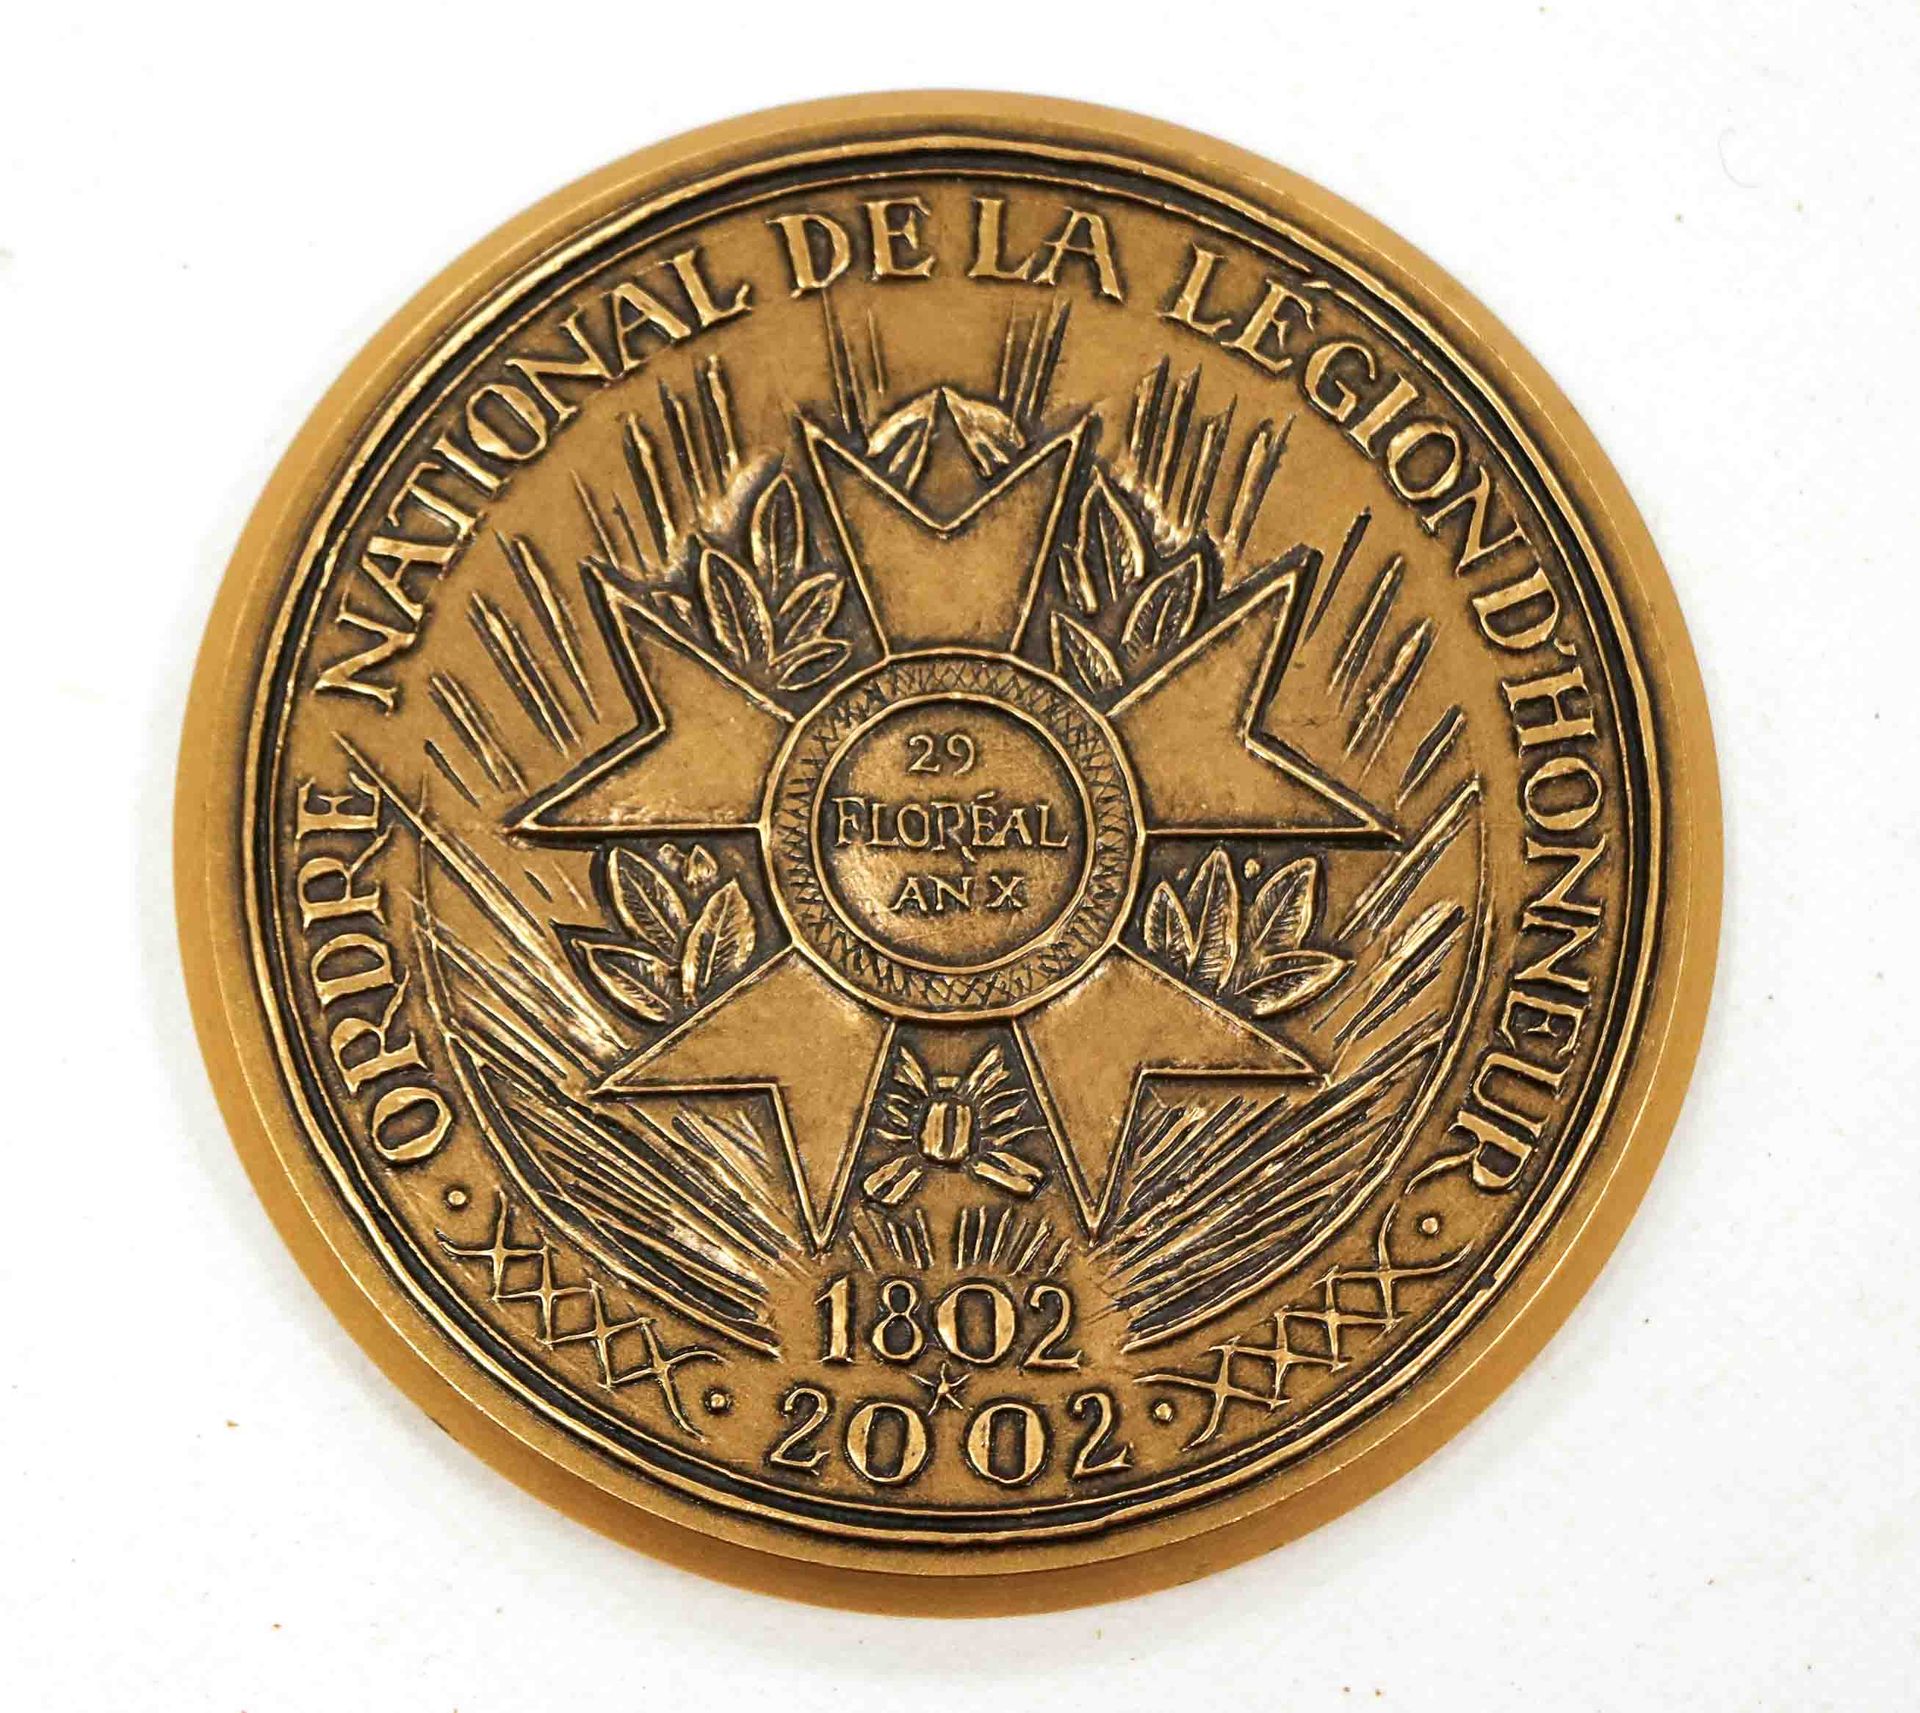 Null Nationaler Orden der Ehrenlegion 1802-2002

Runde Bronzemedaille von R. Cor&hellip;